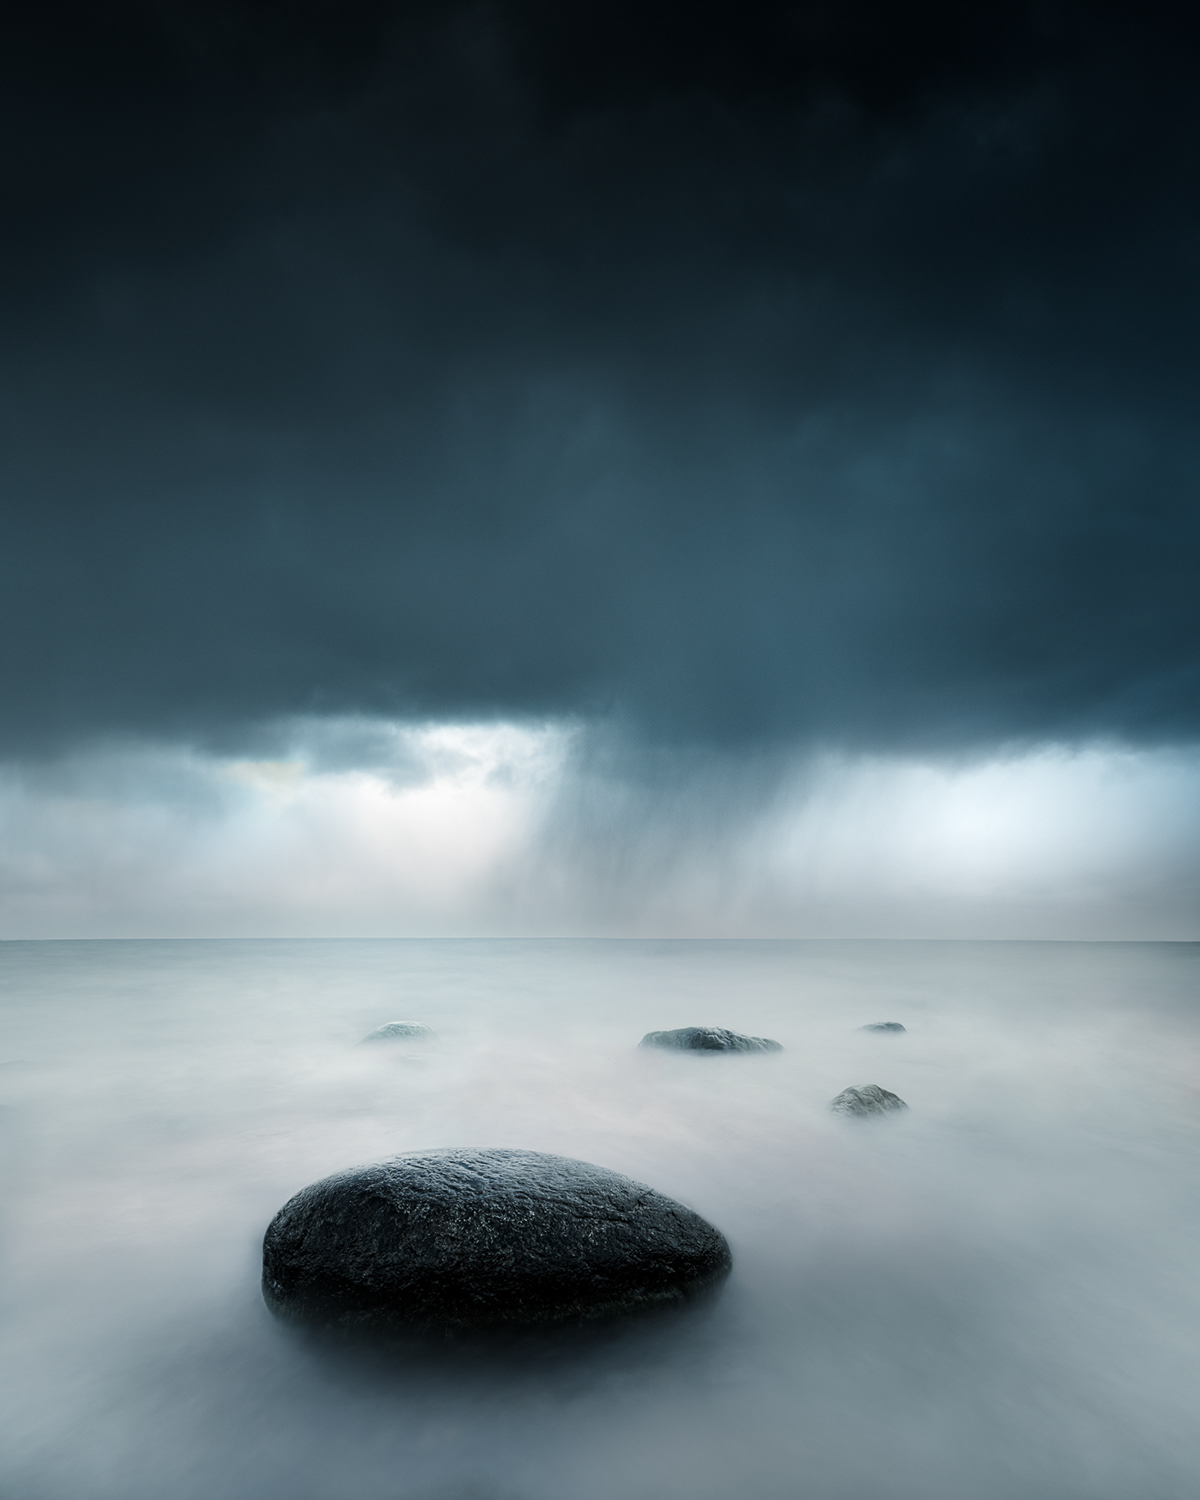 Rainy dark day at the coast of Finland